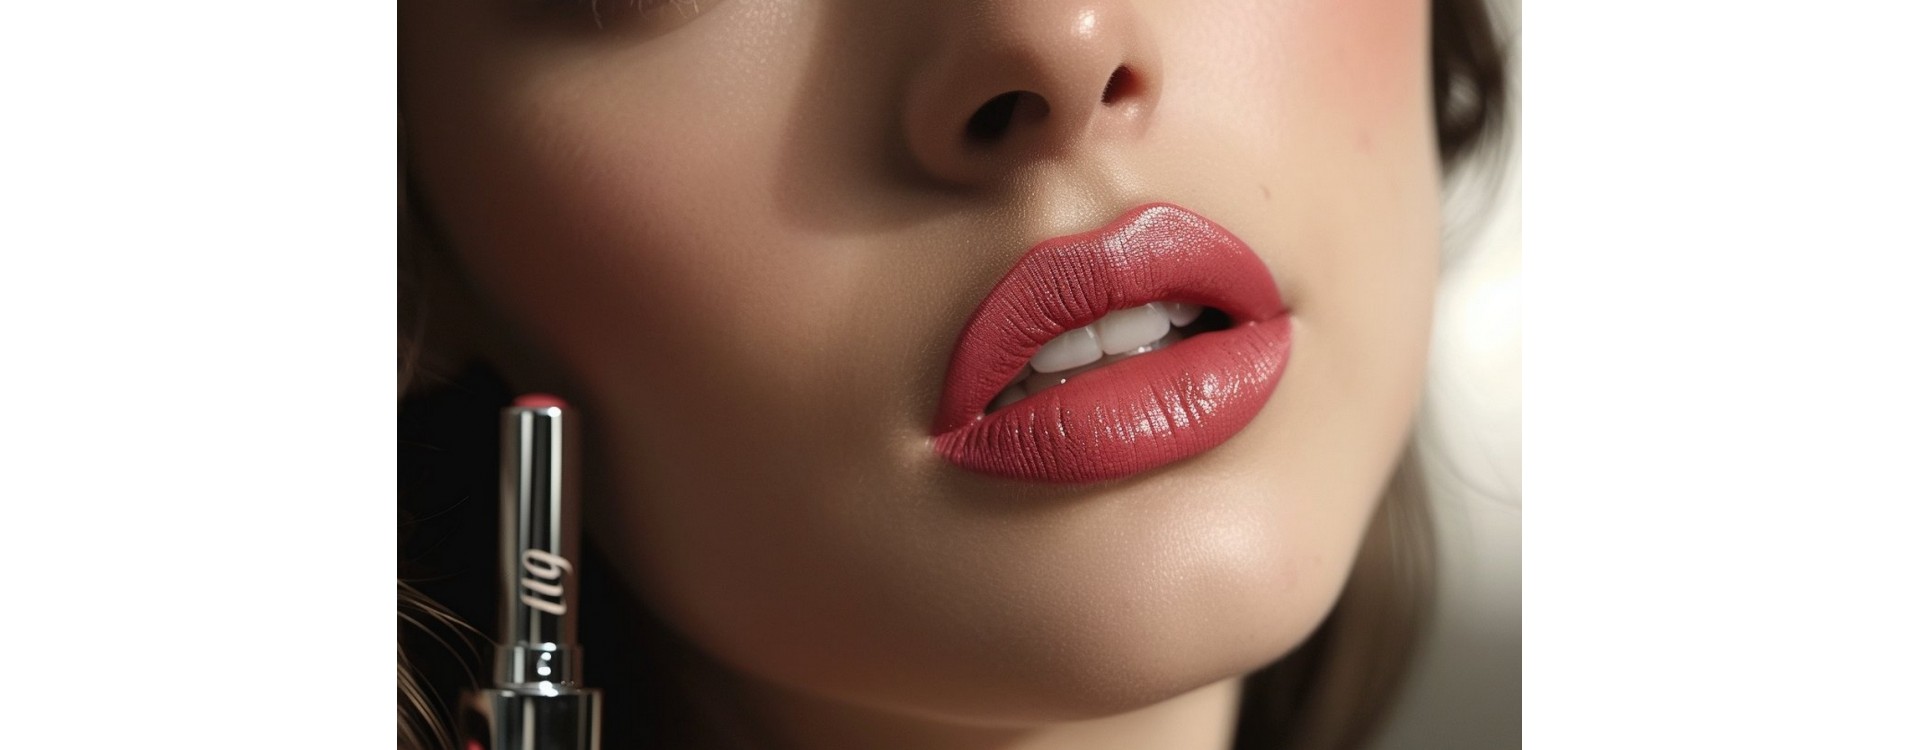 Tendance beauté : le lips combo pour une bouche naturellement pulpeuse